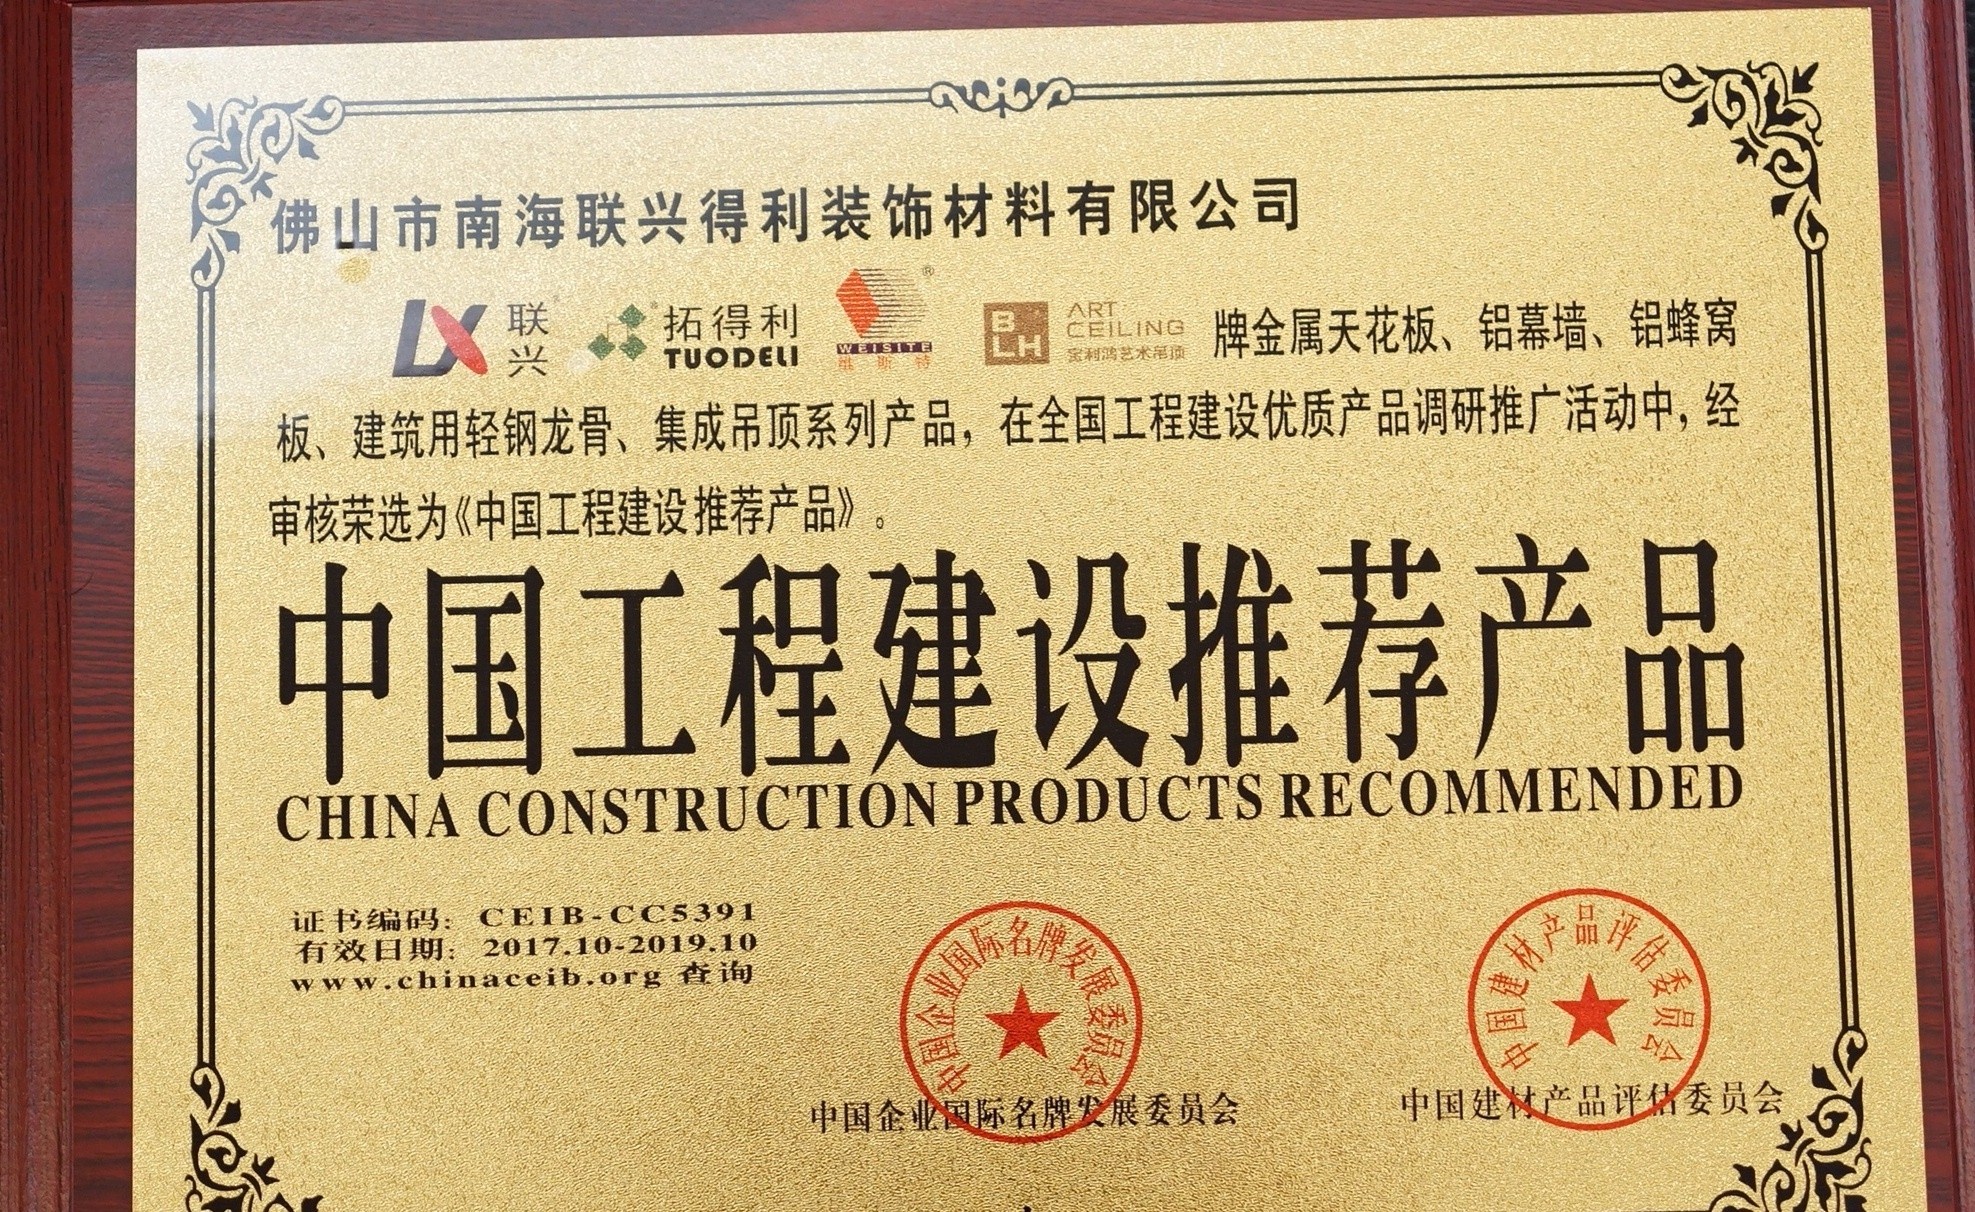 ประเทศจีนผลิตภัณฑ์ก่อสร้างแนะนำ